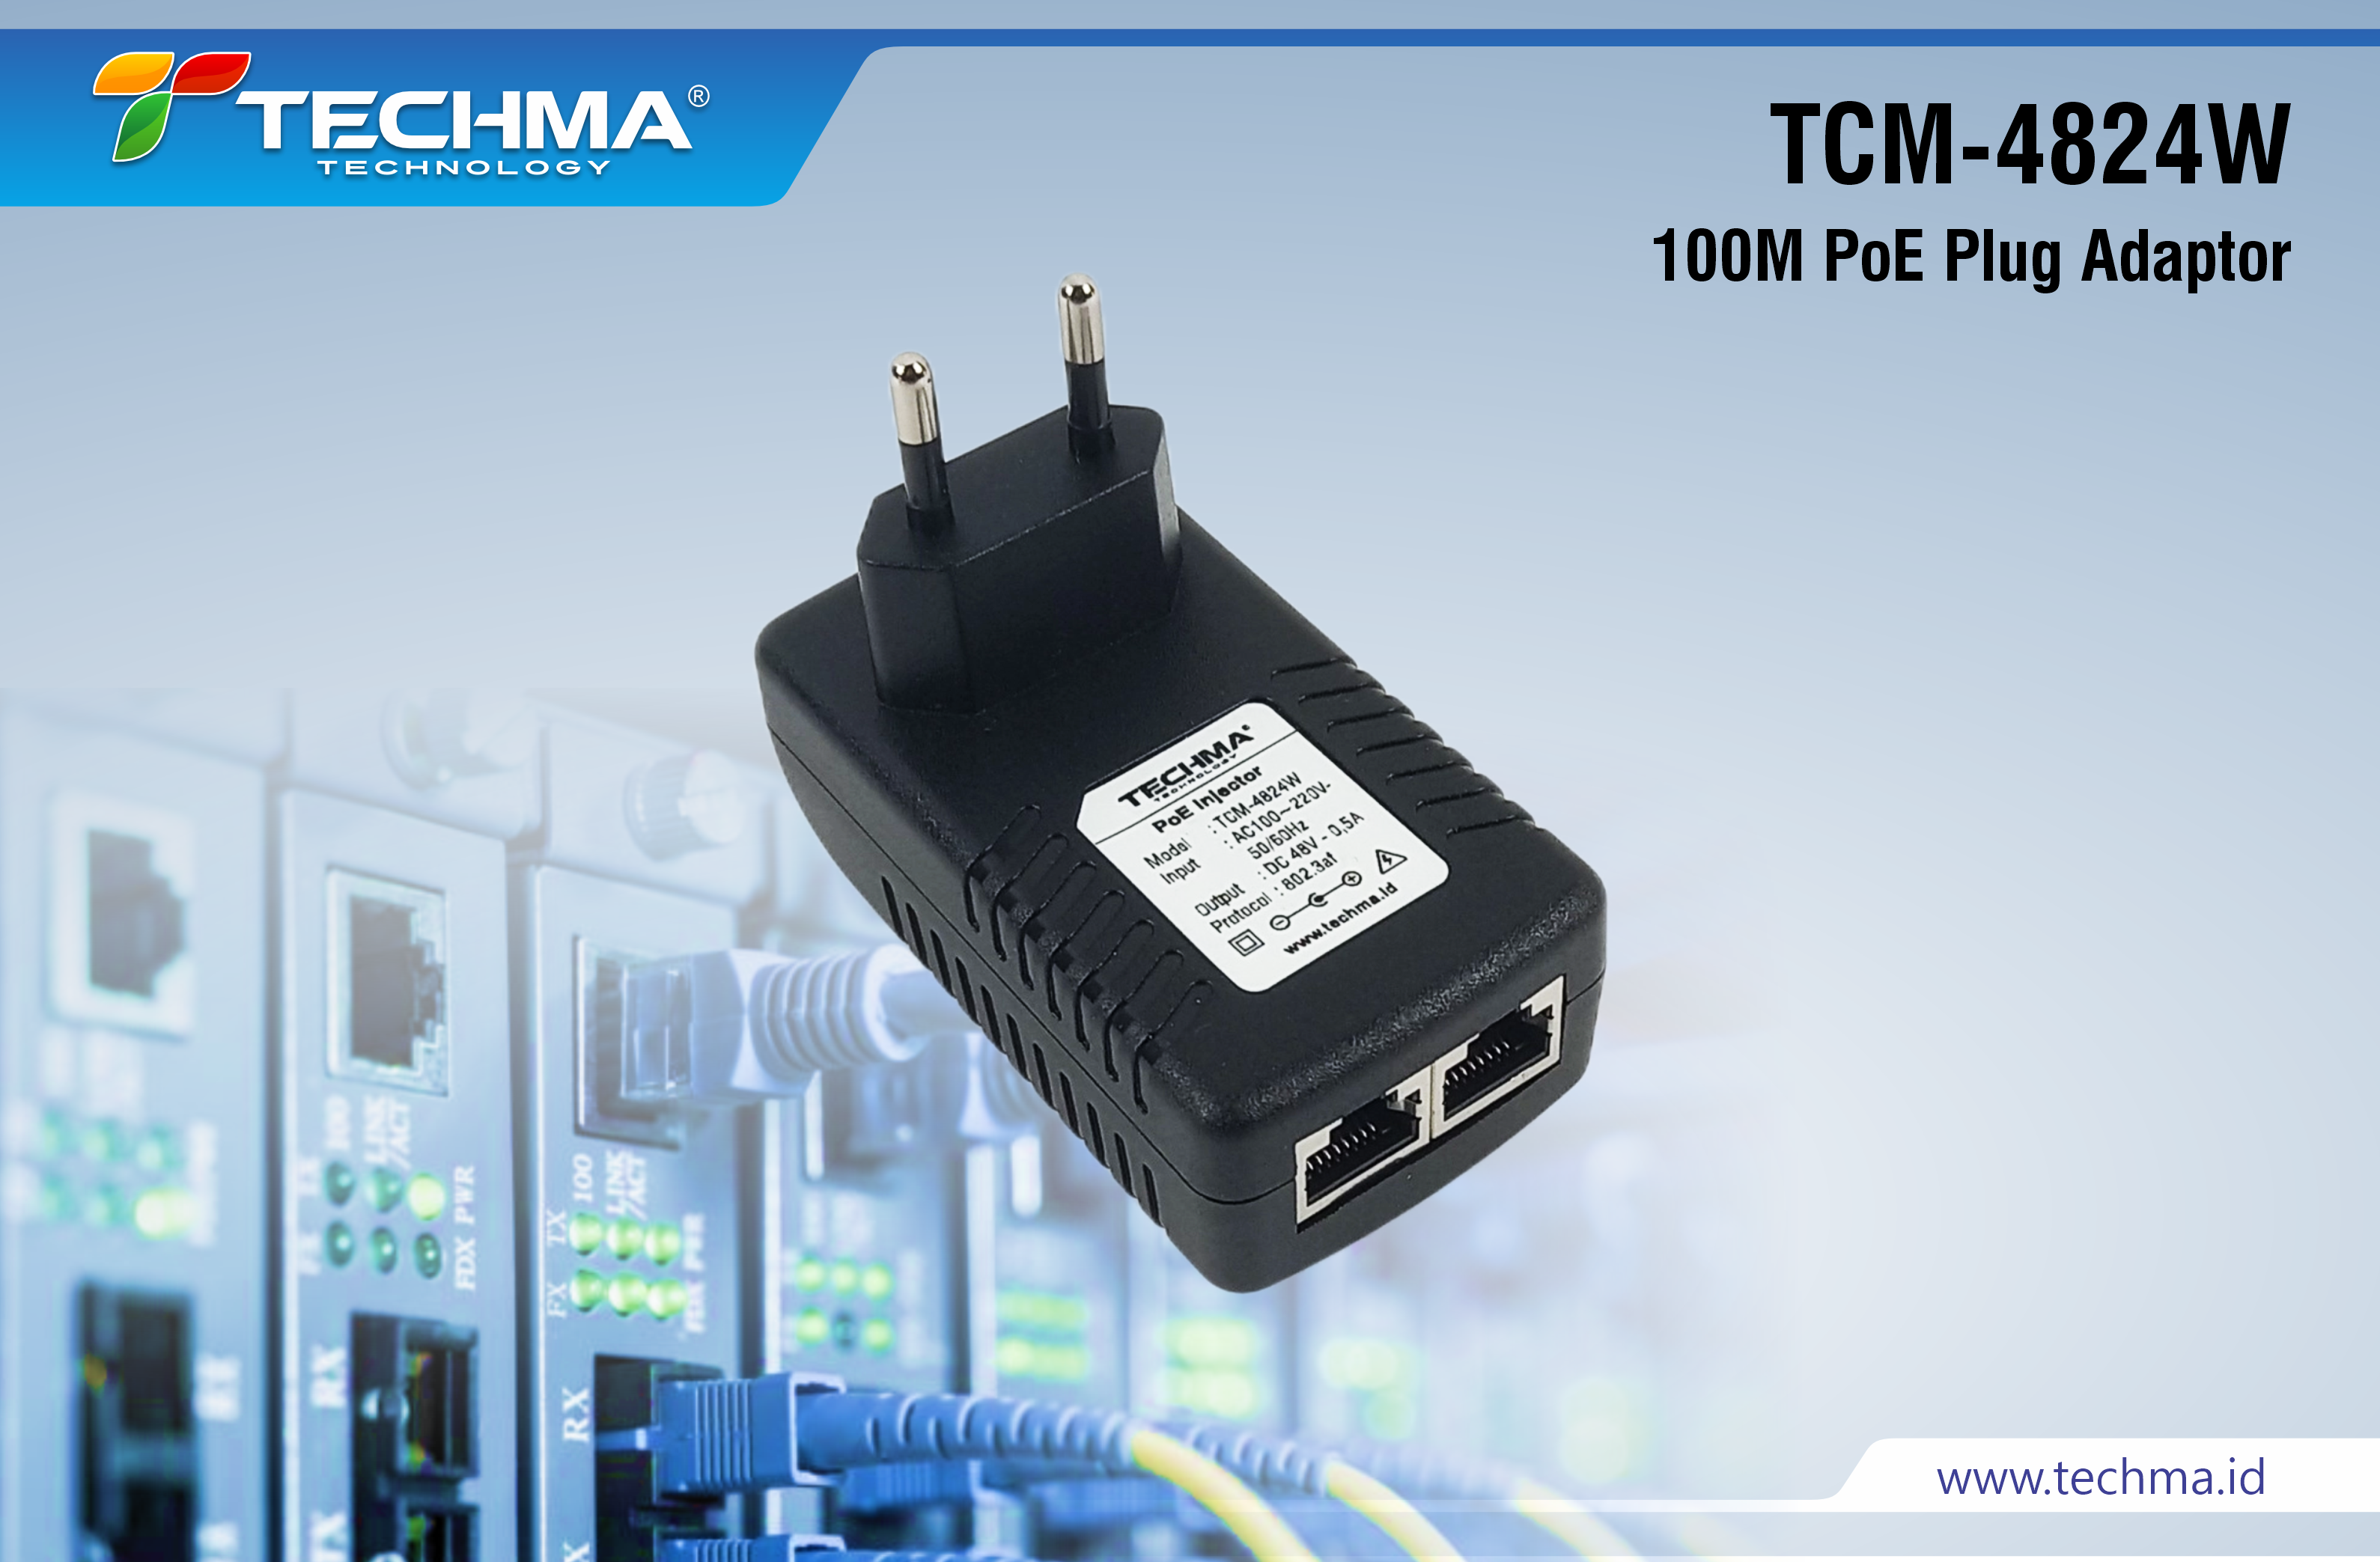 TCM-4824W